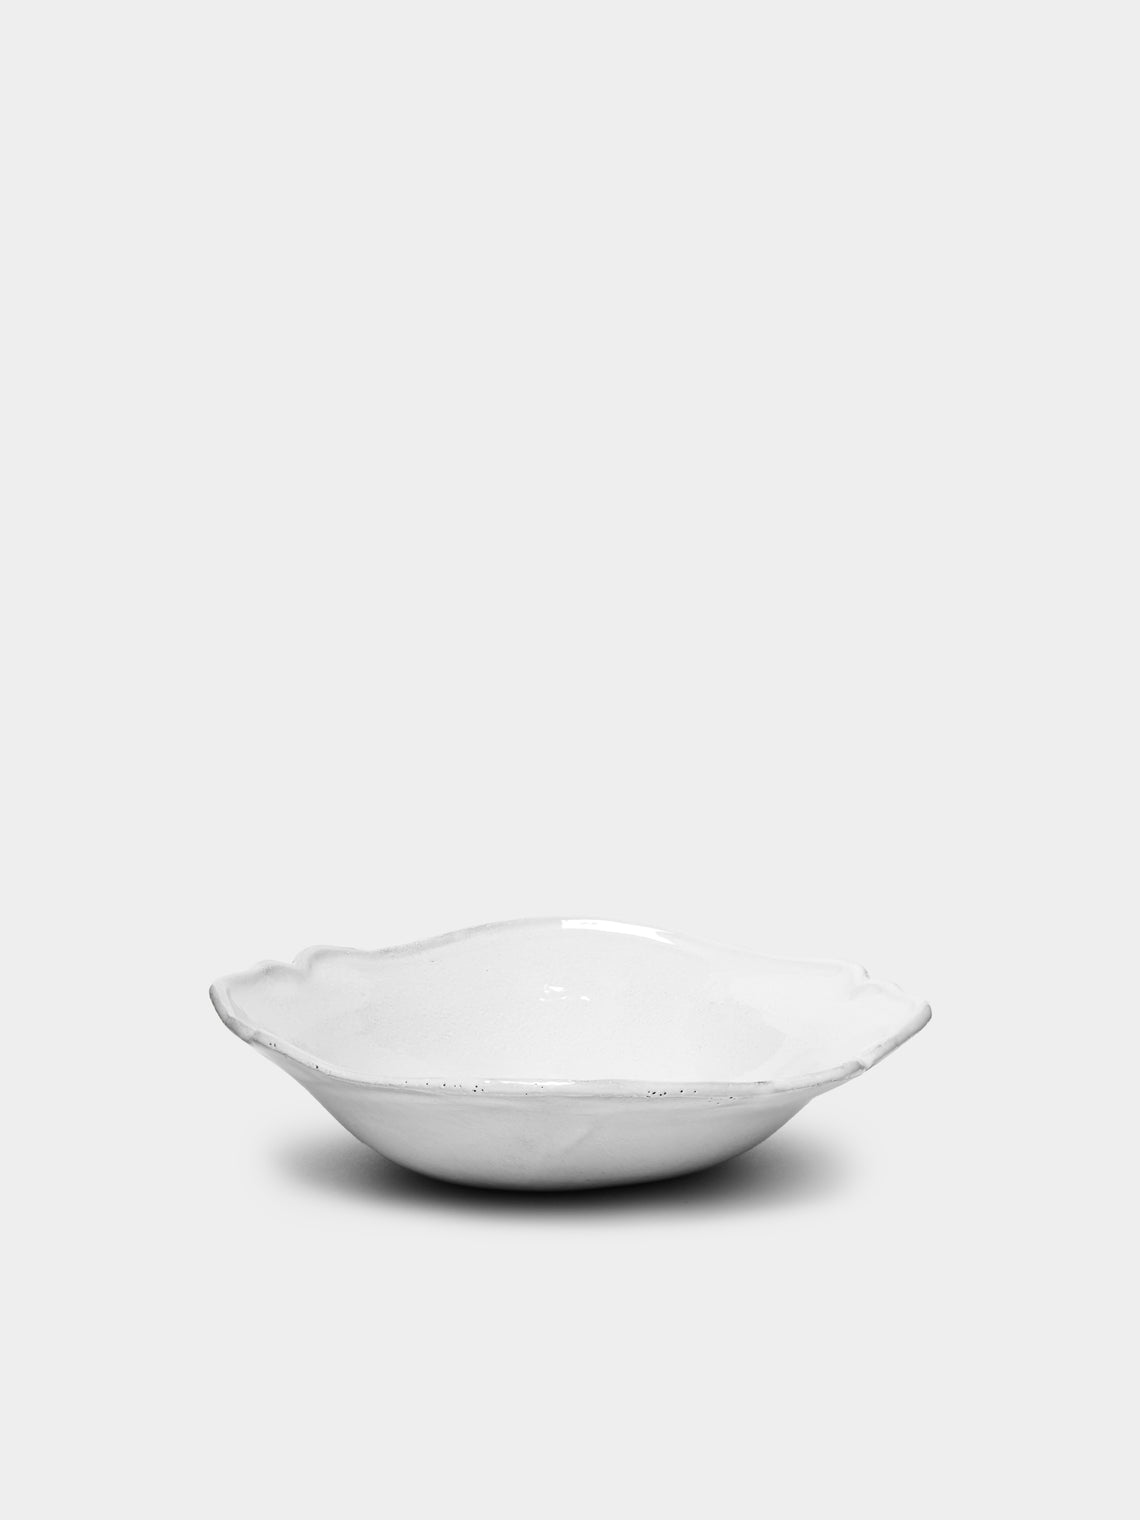 Astier de Villatte - Bac Small Soup Plate -  - ABASK - 